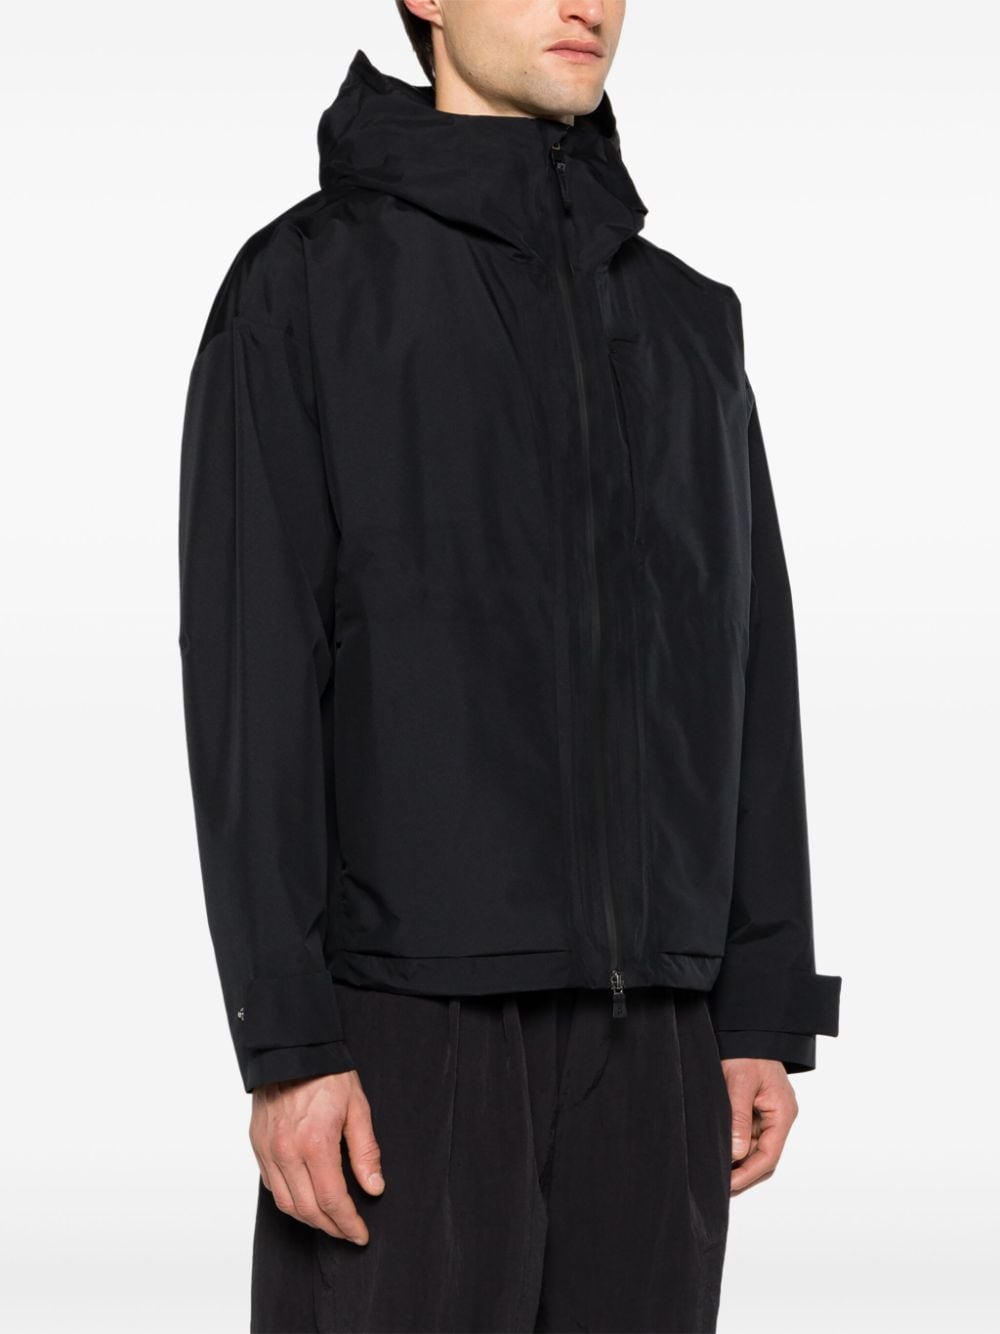 Black waterproof jacket